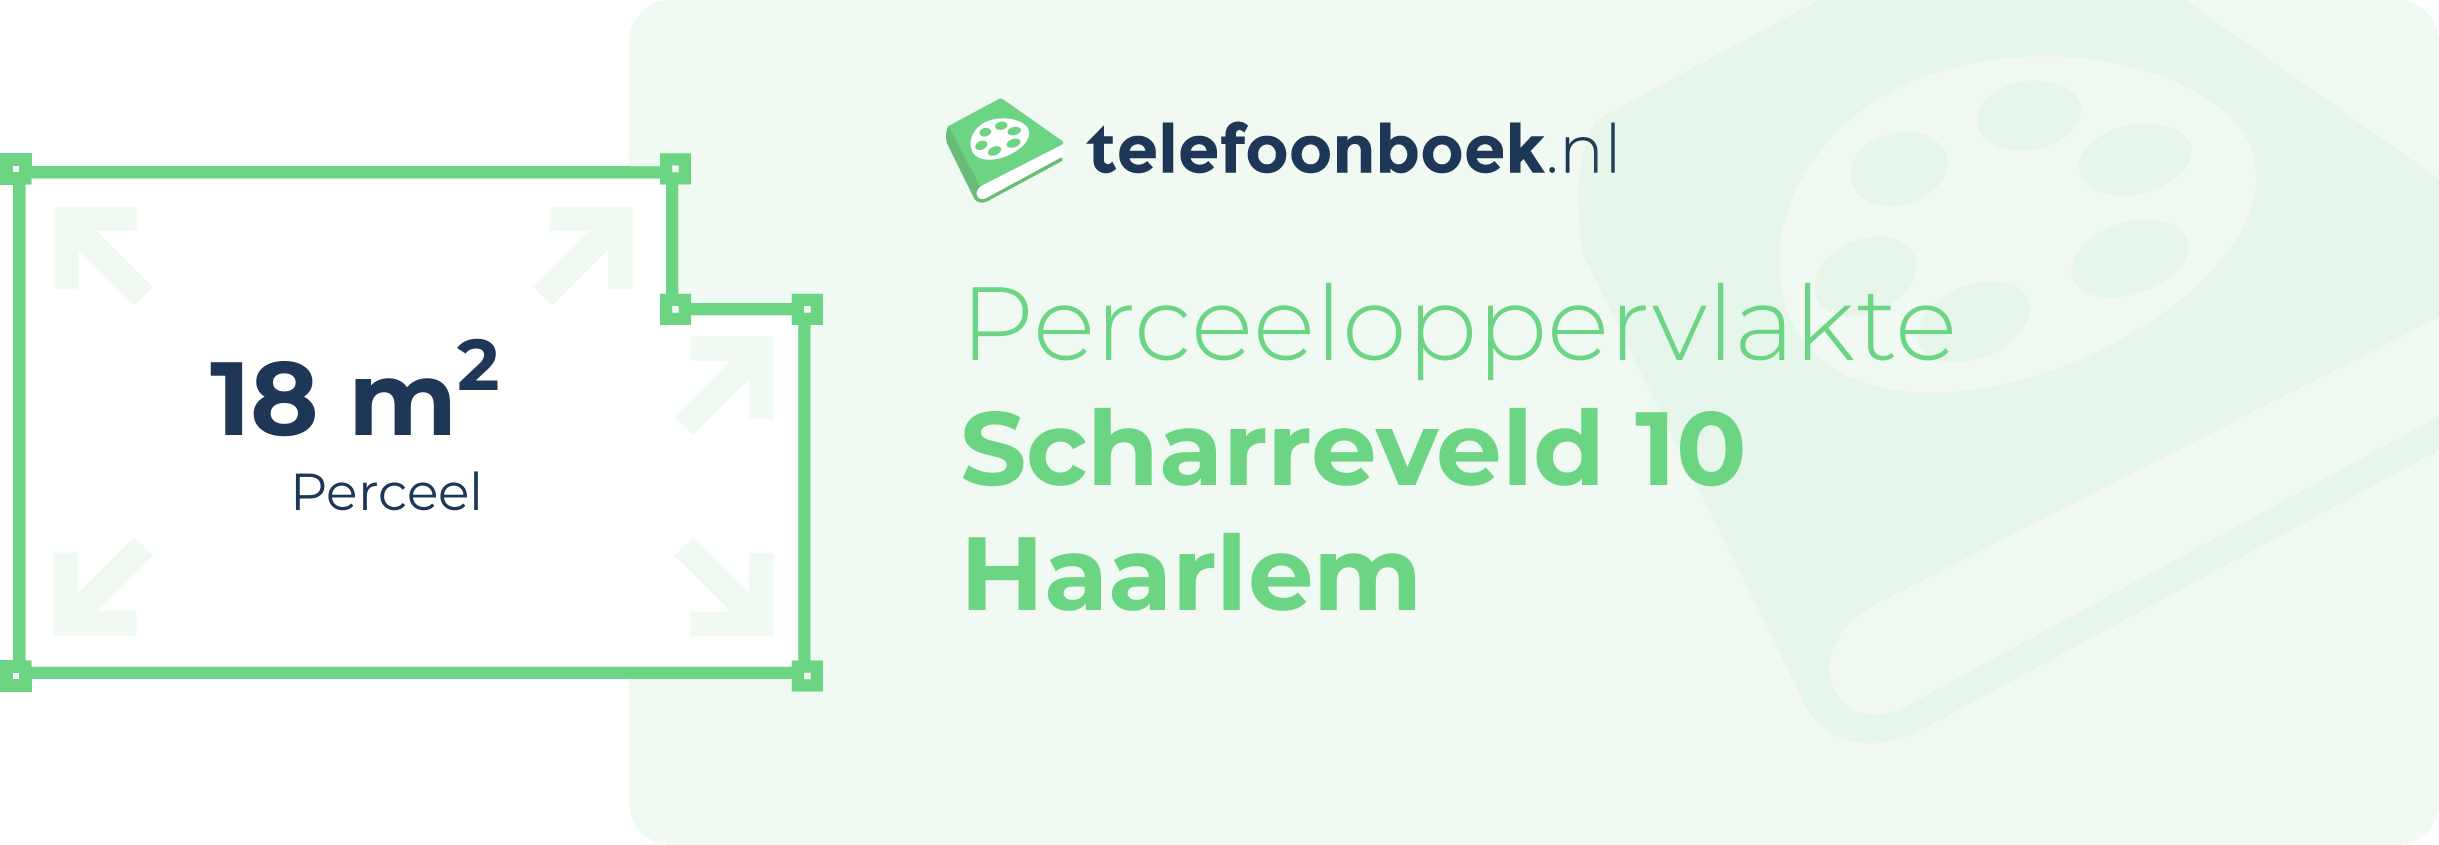 Perceeloppervlakte Scharreveld 10 Haarlem